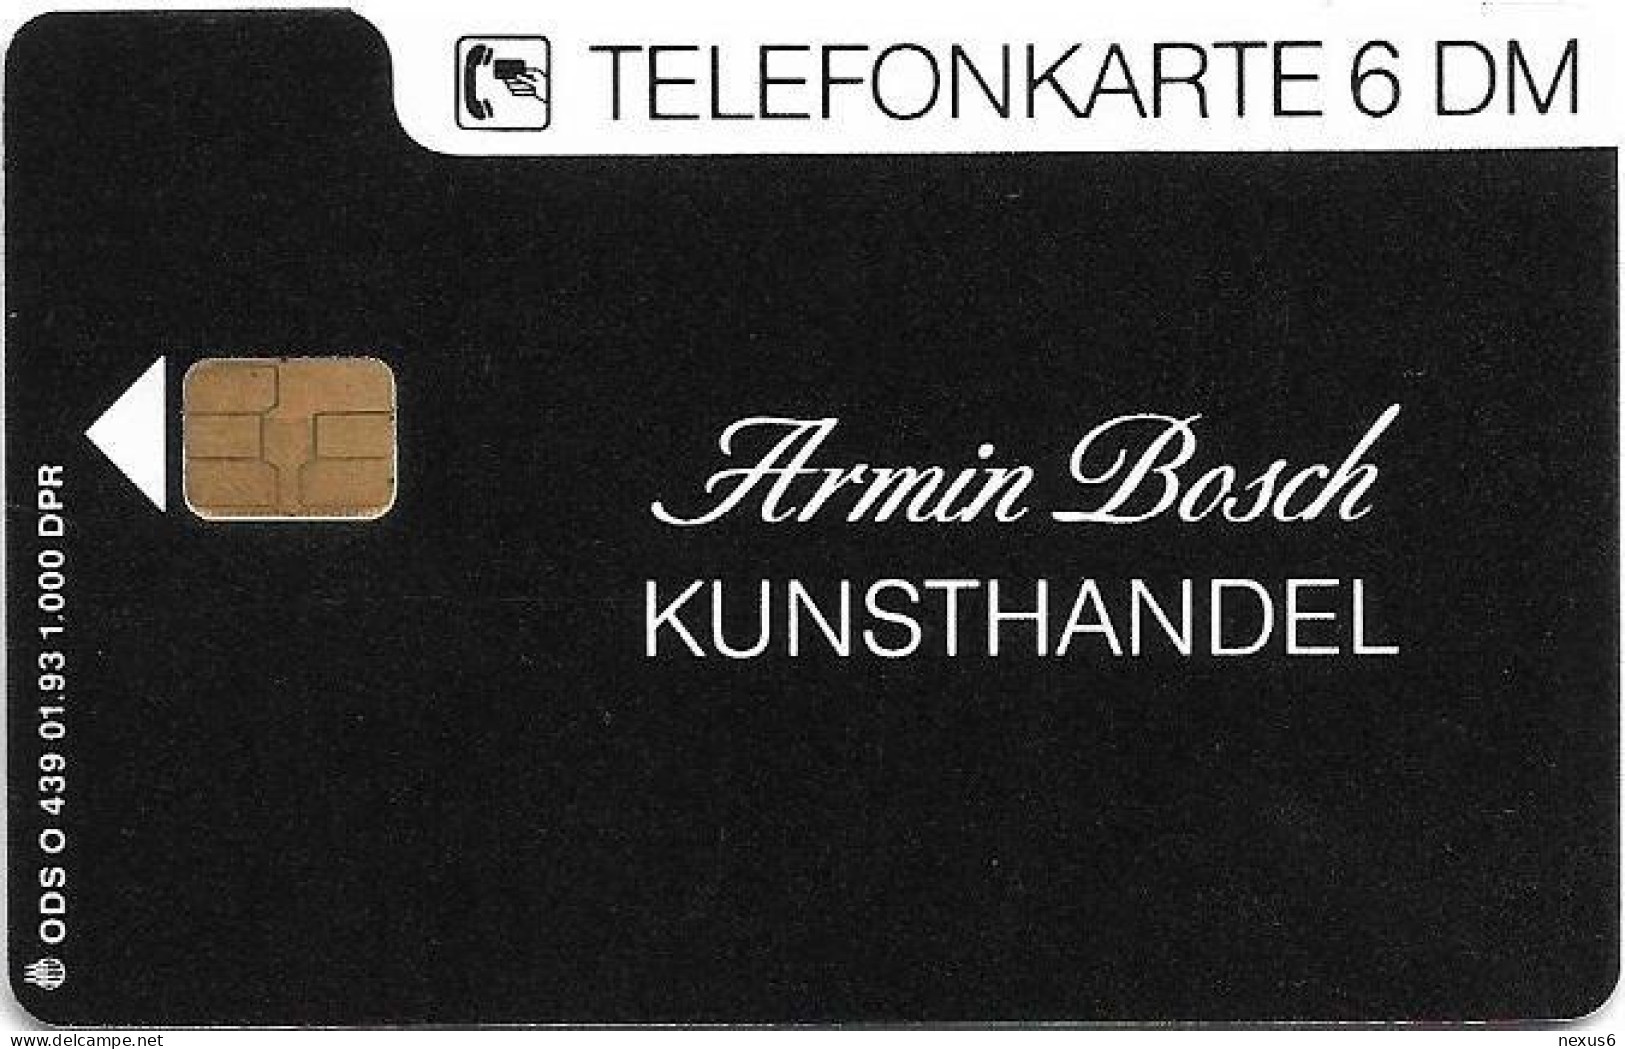 Germany - Kunsthandel Armin Bosch - O 0439 - 01.1993, 6DM, 1.000ex, Mint - O-Reeksen : Klantenreeksen